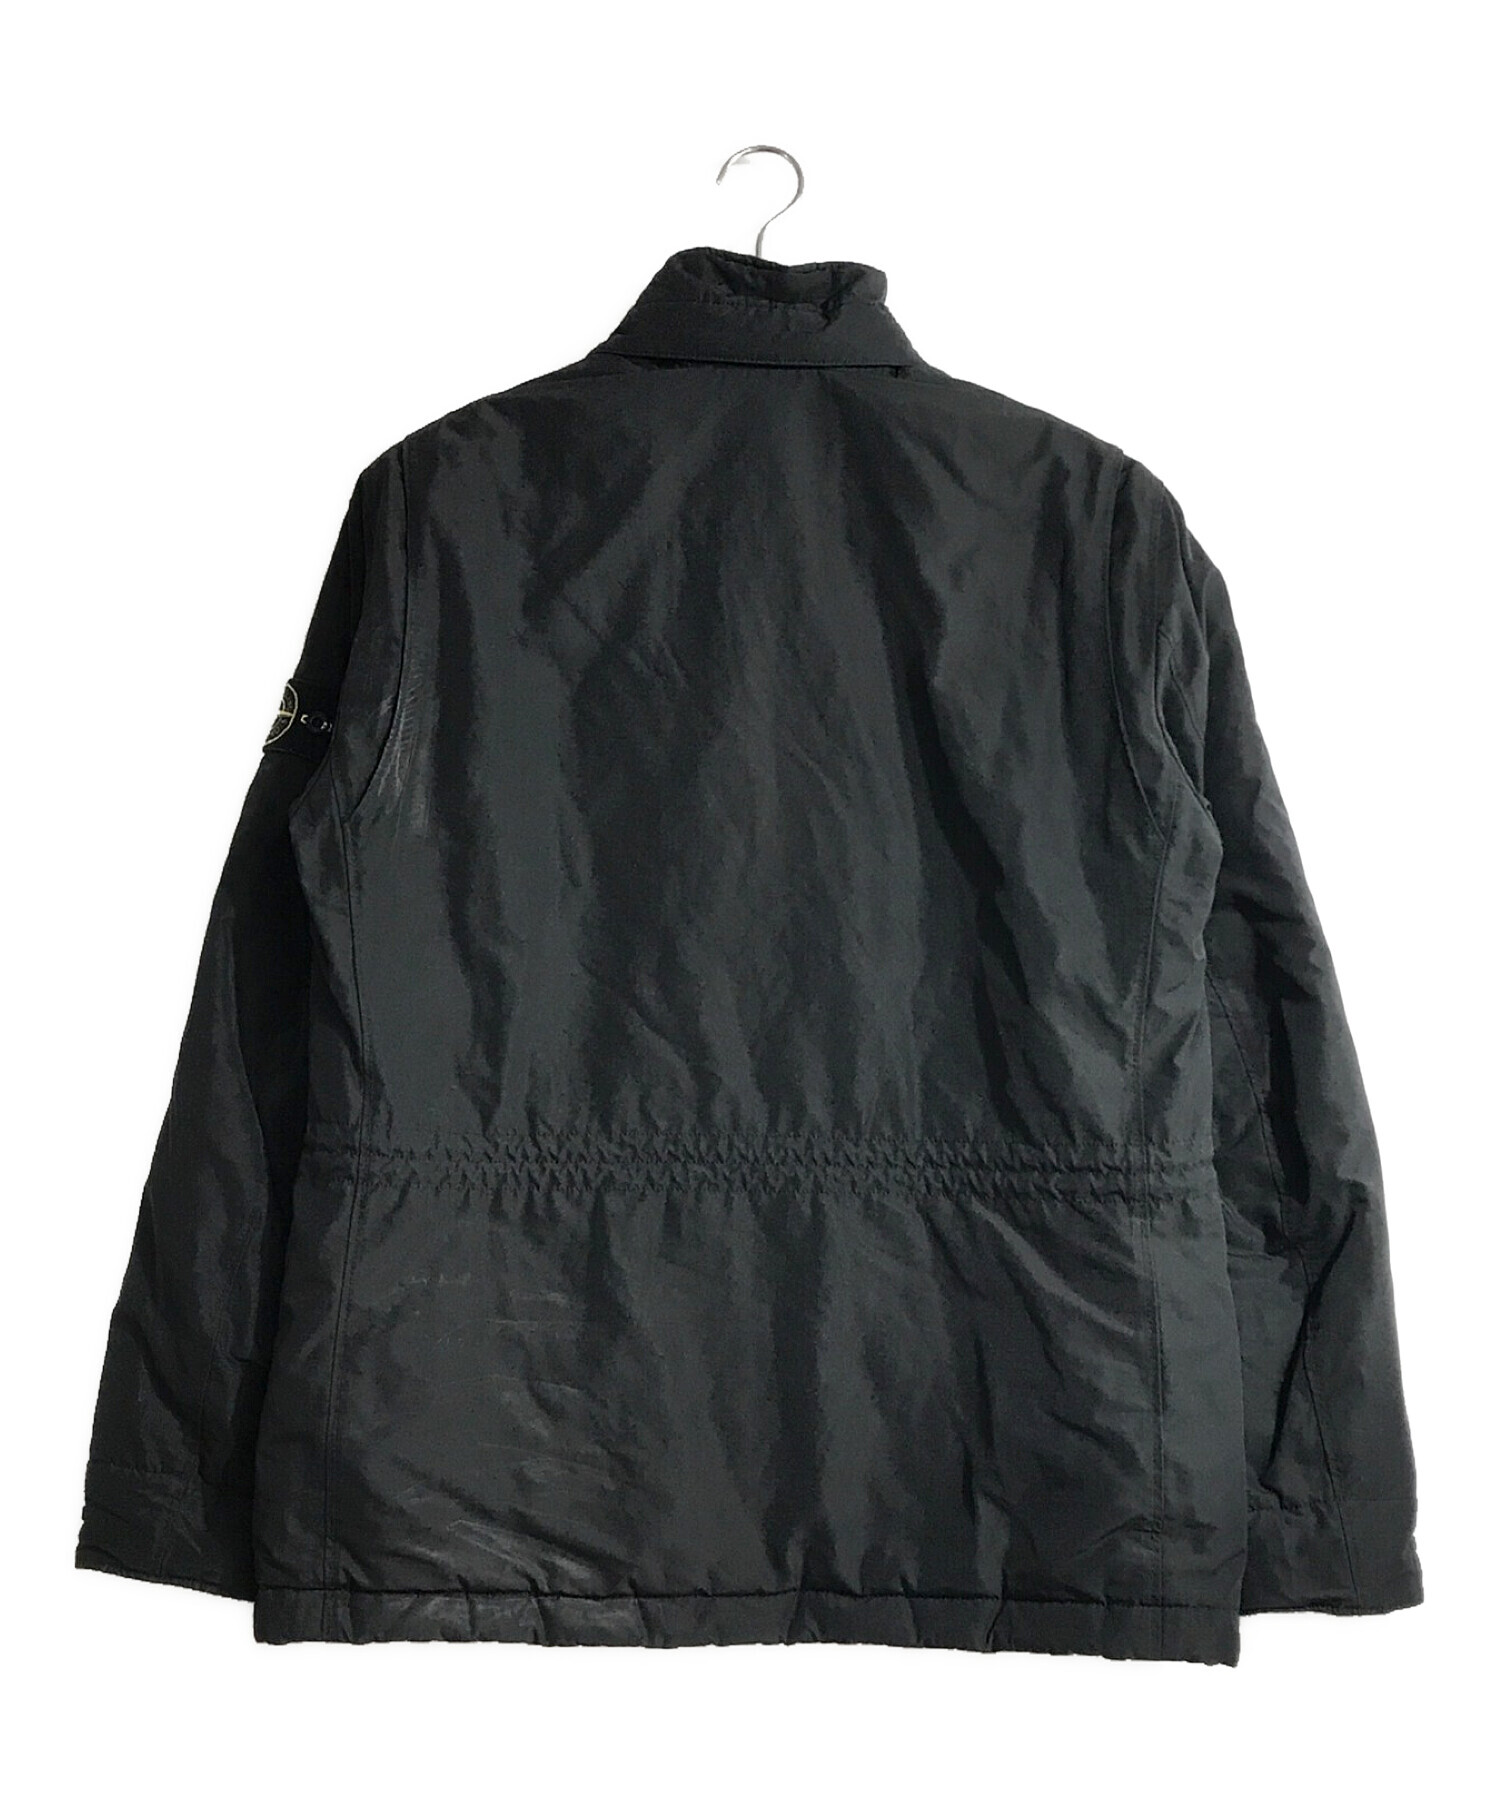 STONE ISLAND (ストーンアイランド) フィールドジャケット ブラック サイズ:L